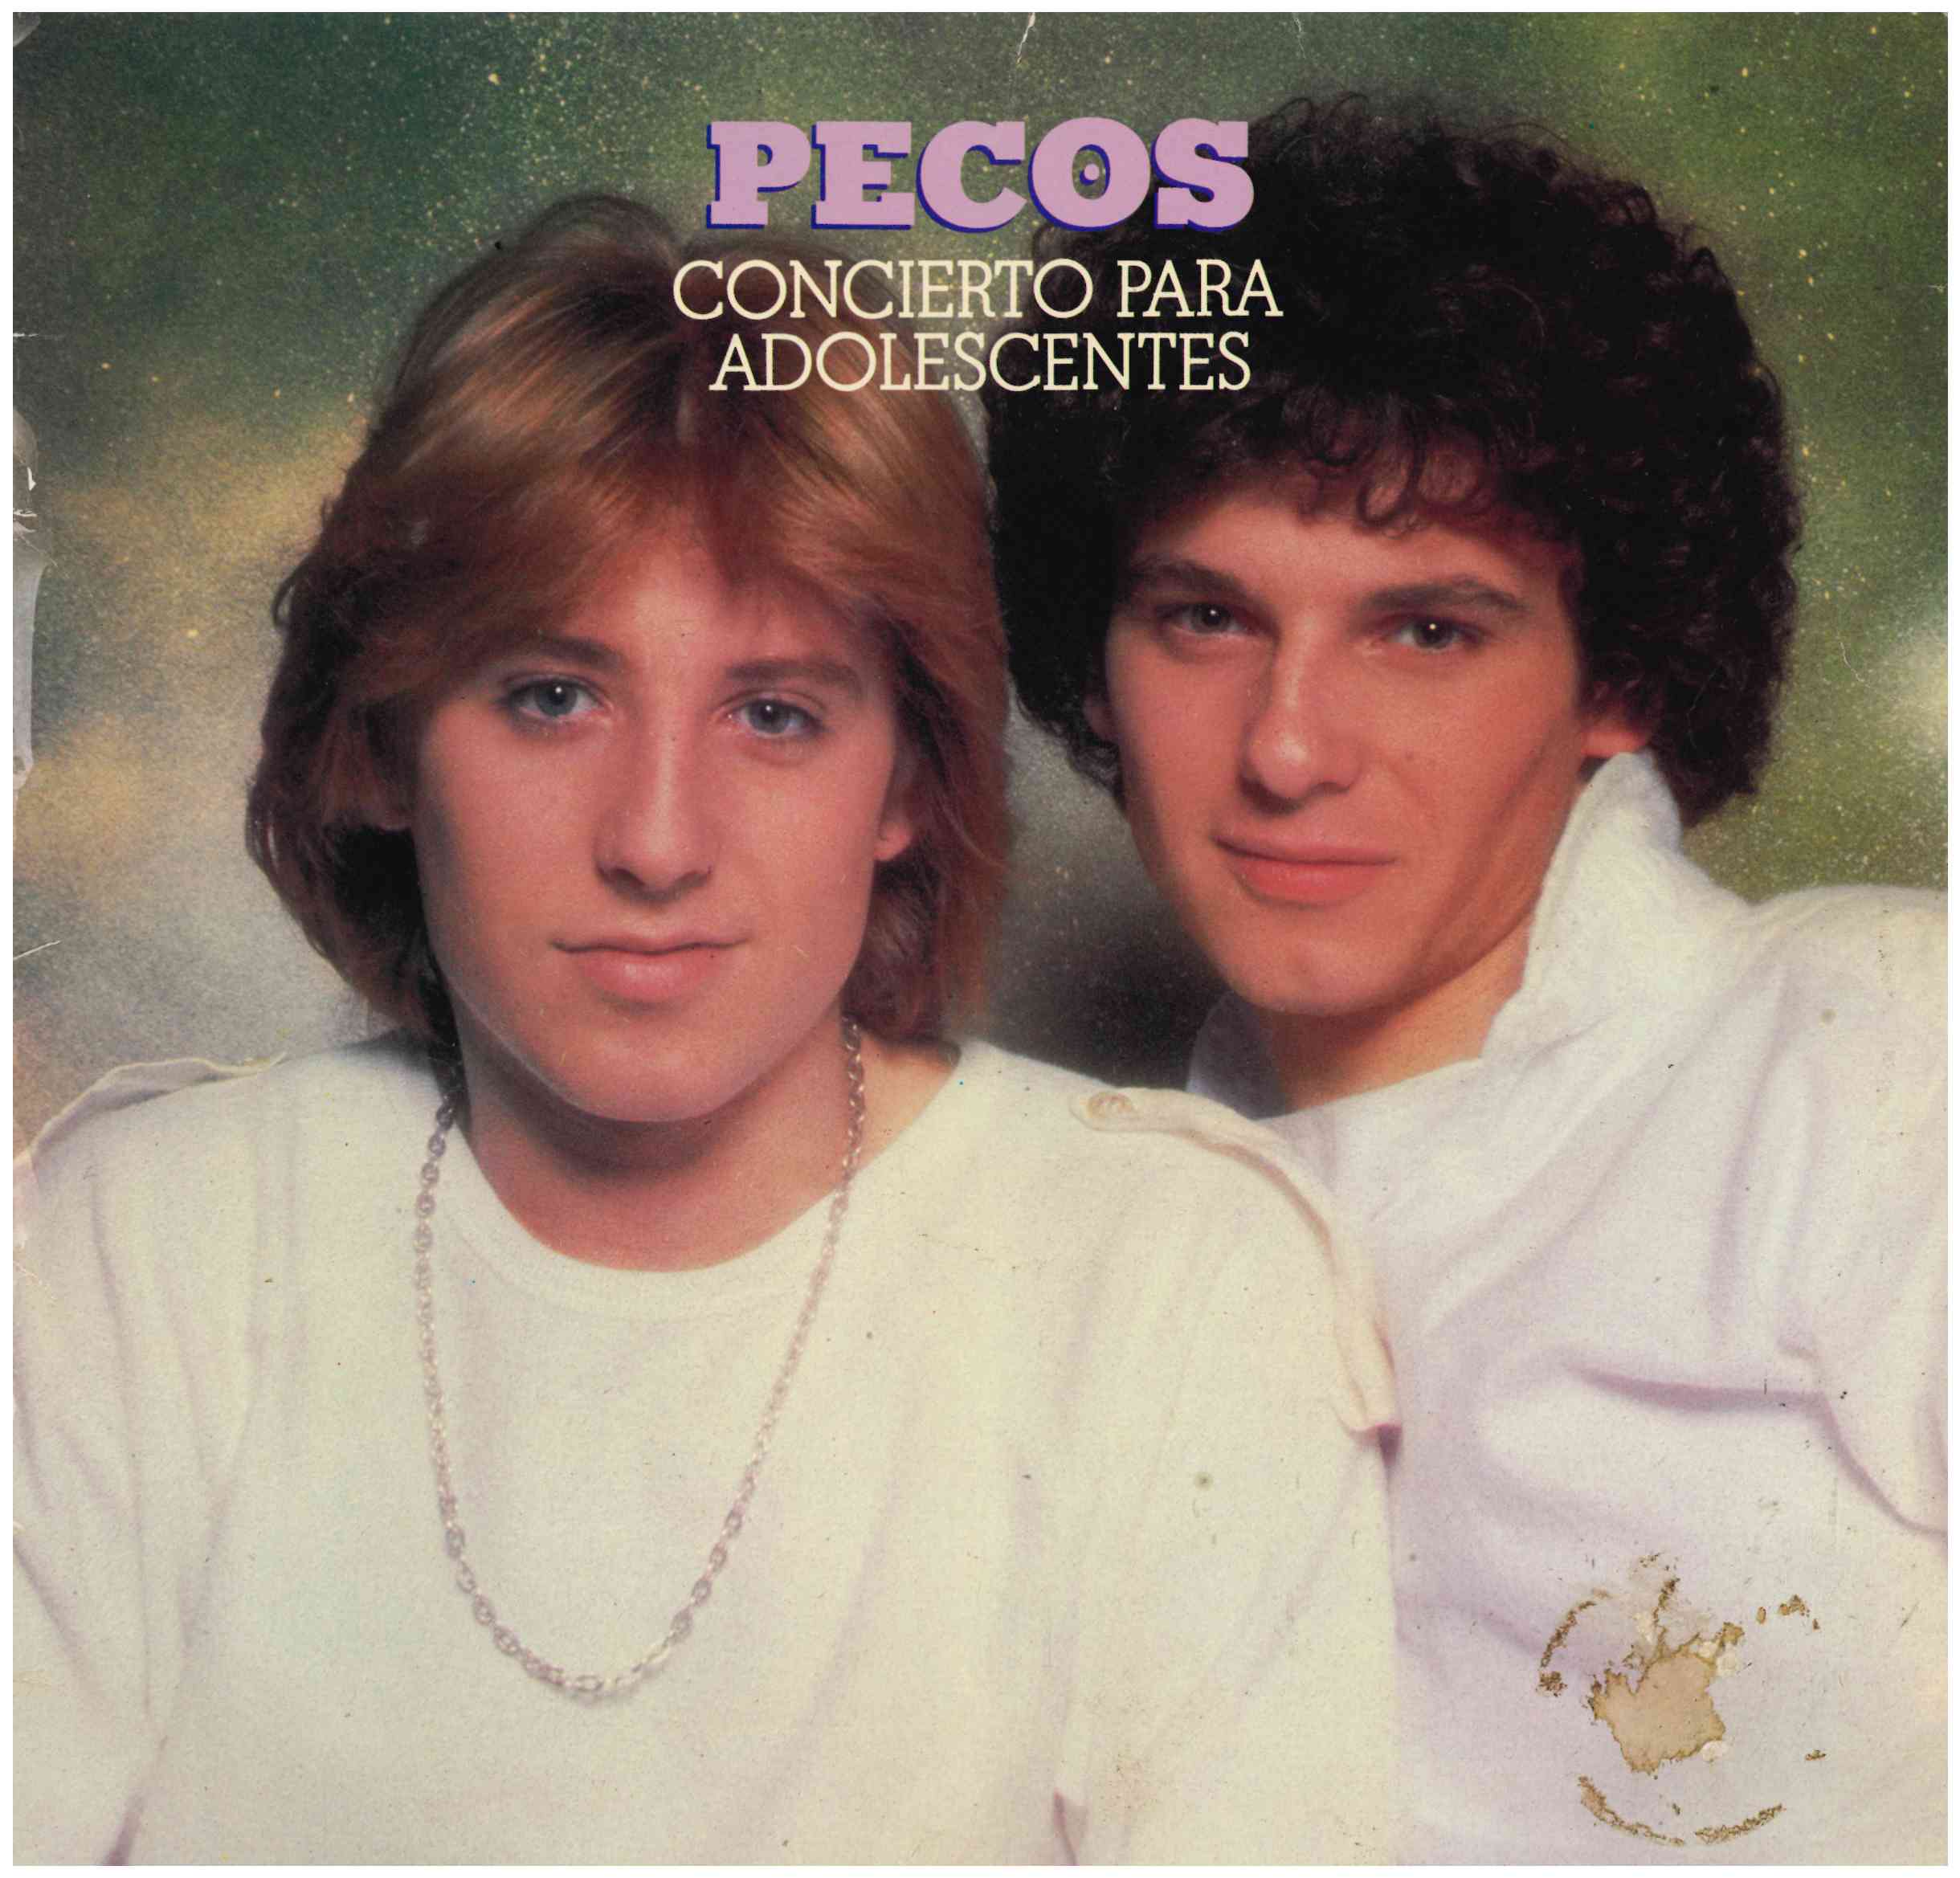 Pecos. Concierto para adolescentes. Epic 1979 (EPC 83412)